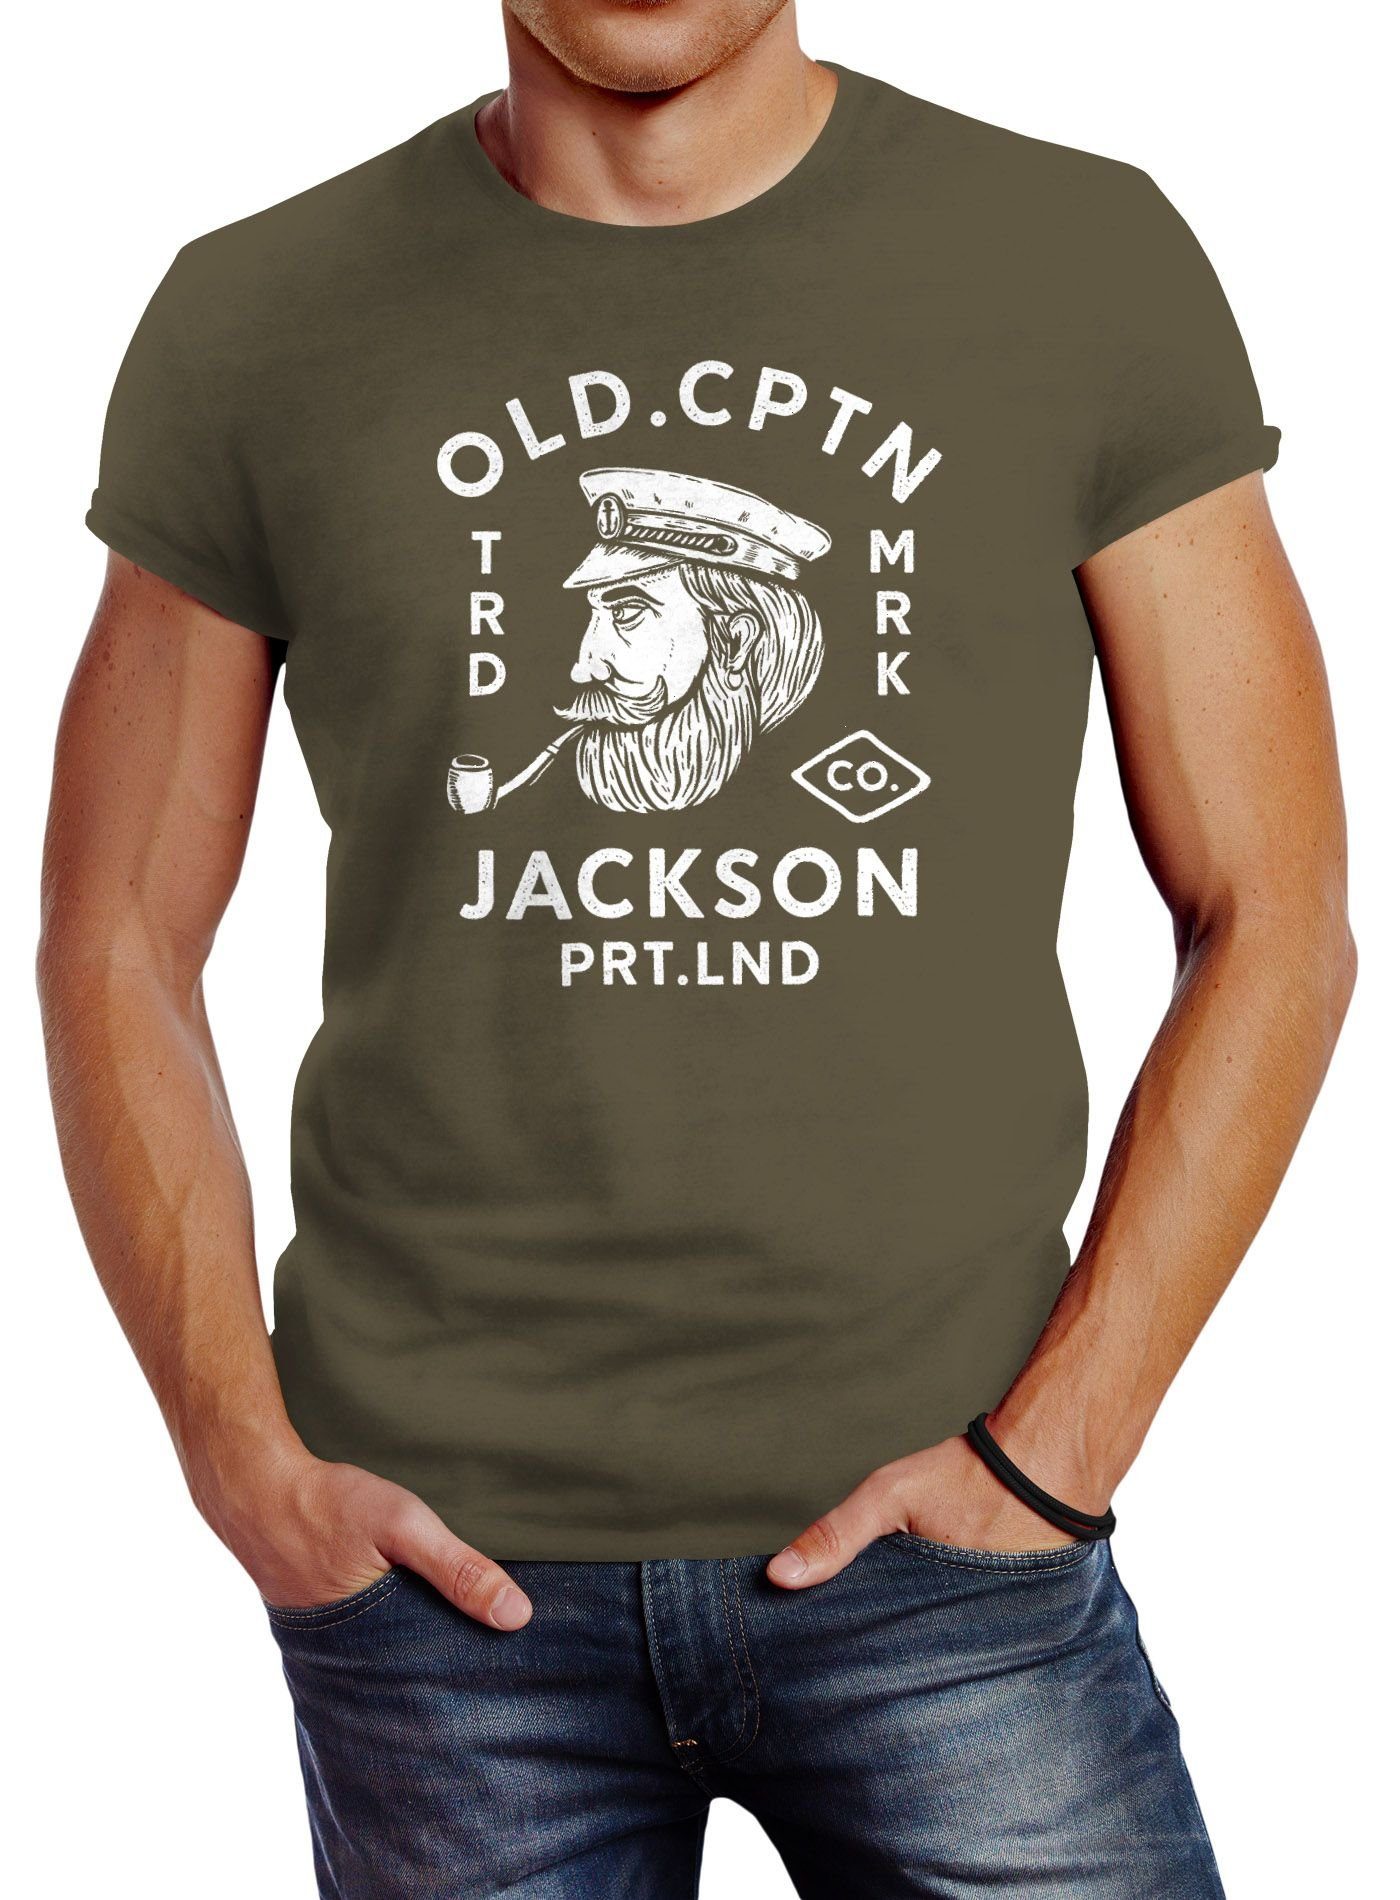 Neverless Print-Shirt Neverless® Herren T-Shirt Kapitän Motiv Aufdruck Old Cptn Jackson Retro Print-Shirt mit Print grün